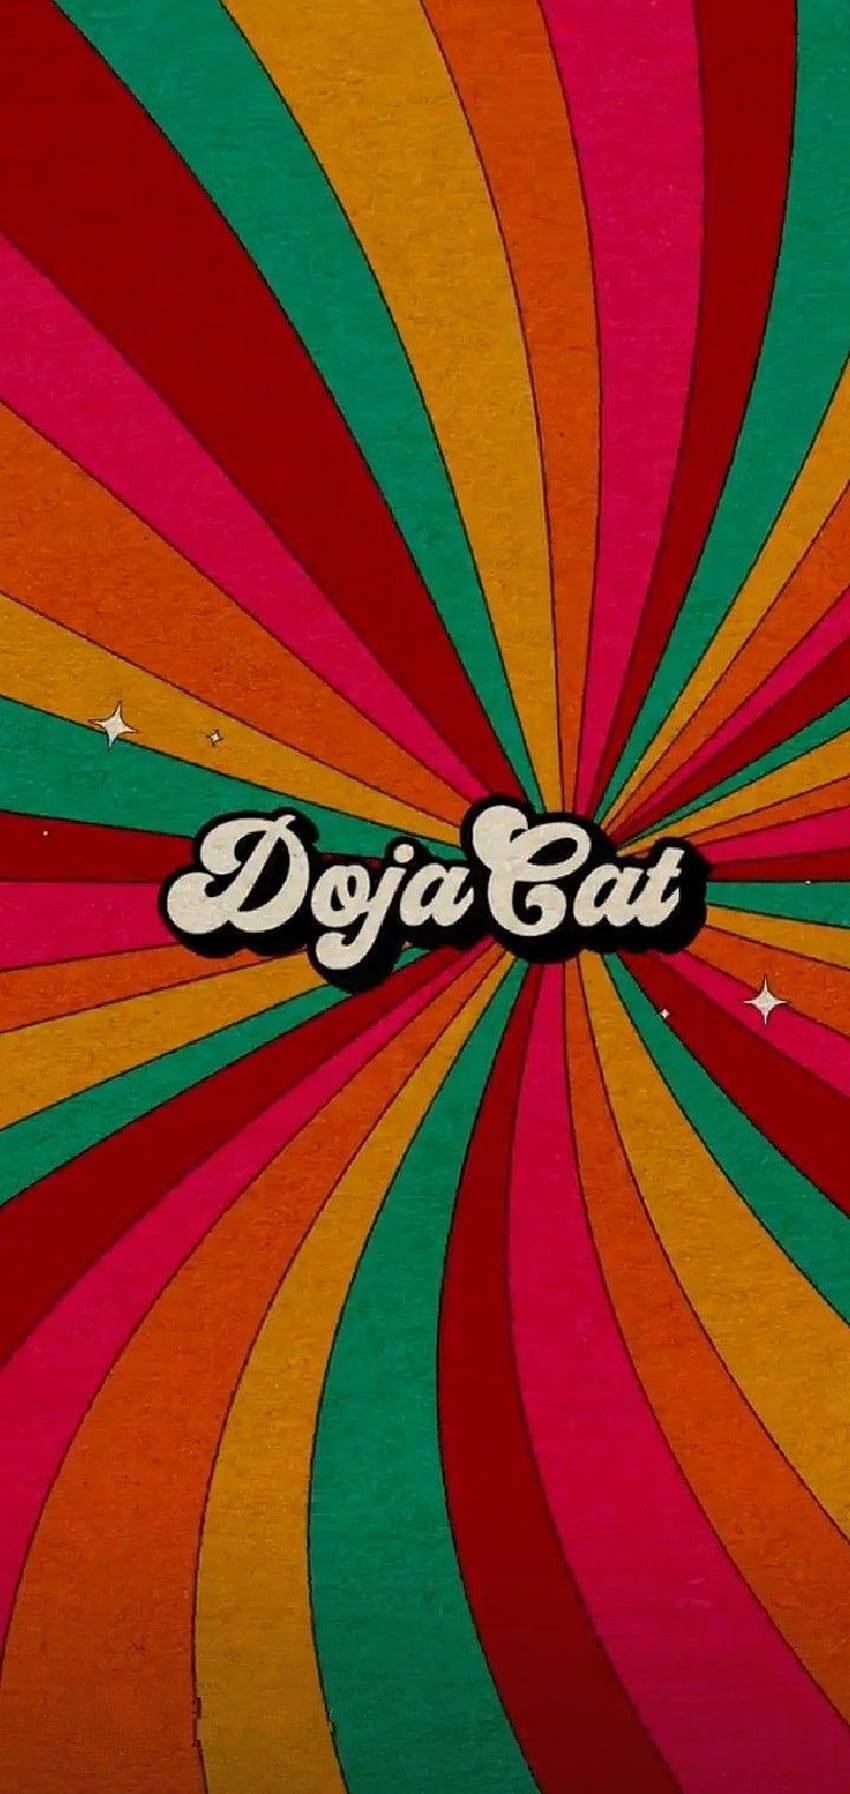 Say so Doja cat, doja cat say so HD phone wallpaper